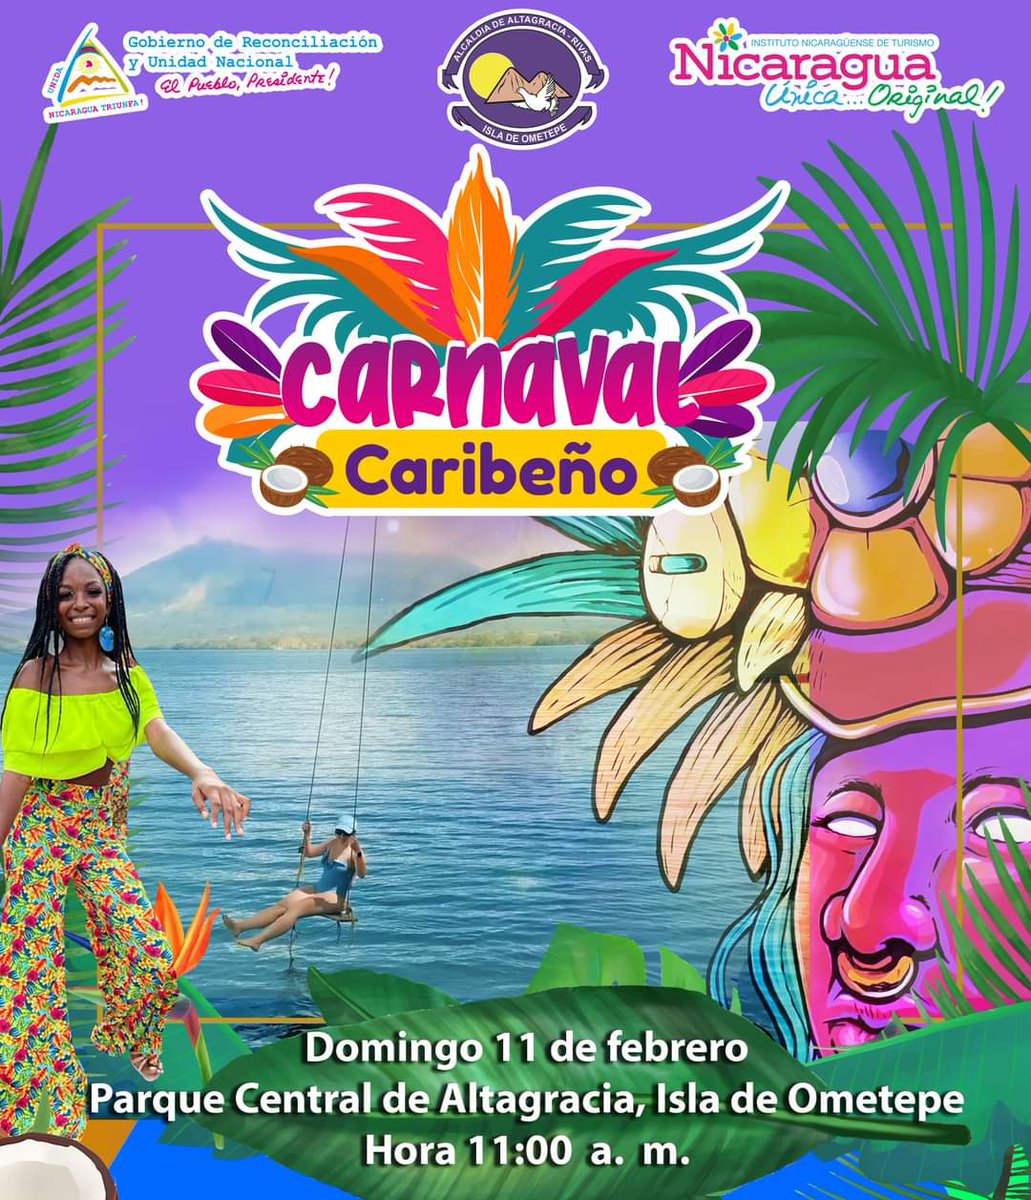 La Isla de Ometepe también disfrutará de la cultura de nuestra Costa Caribe.
#01febrero